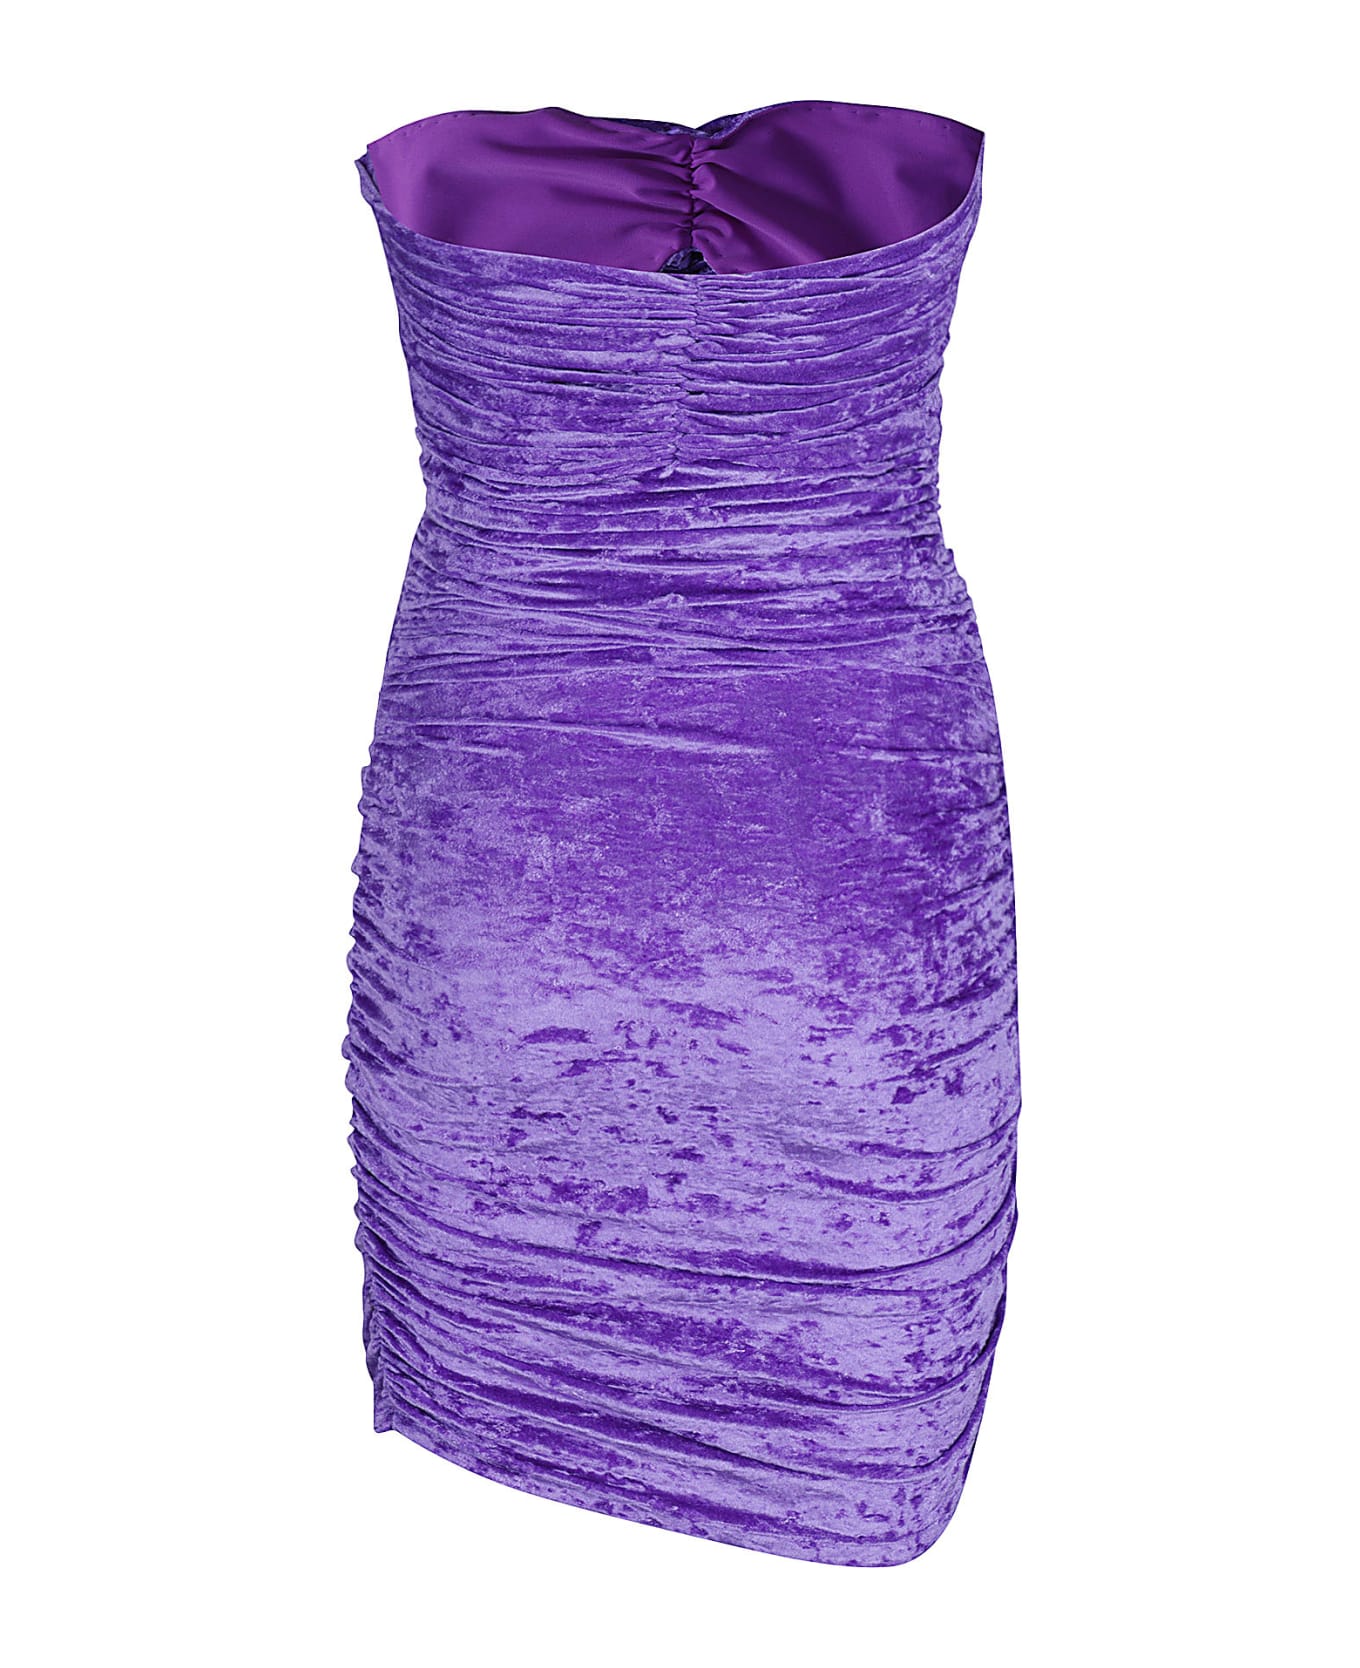 Amen Dress In Crush Velvet - Purple